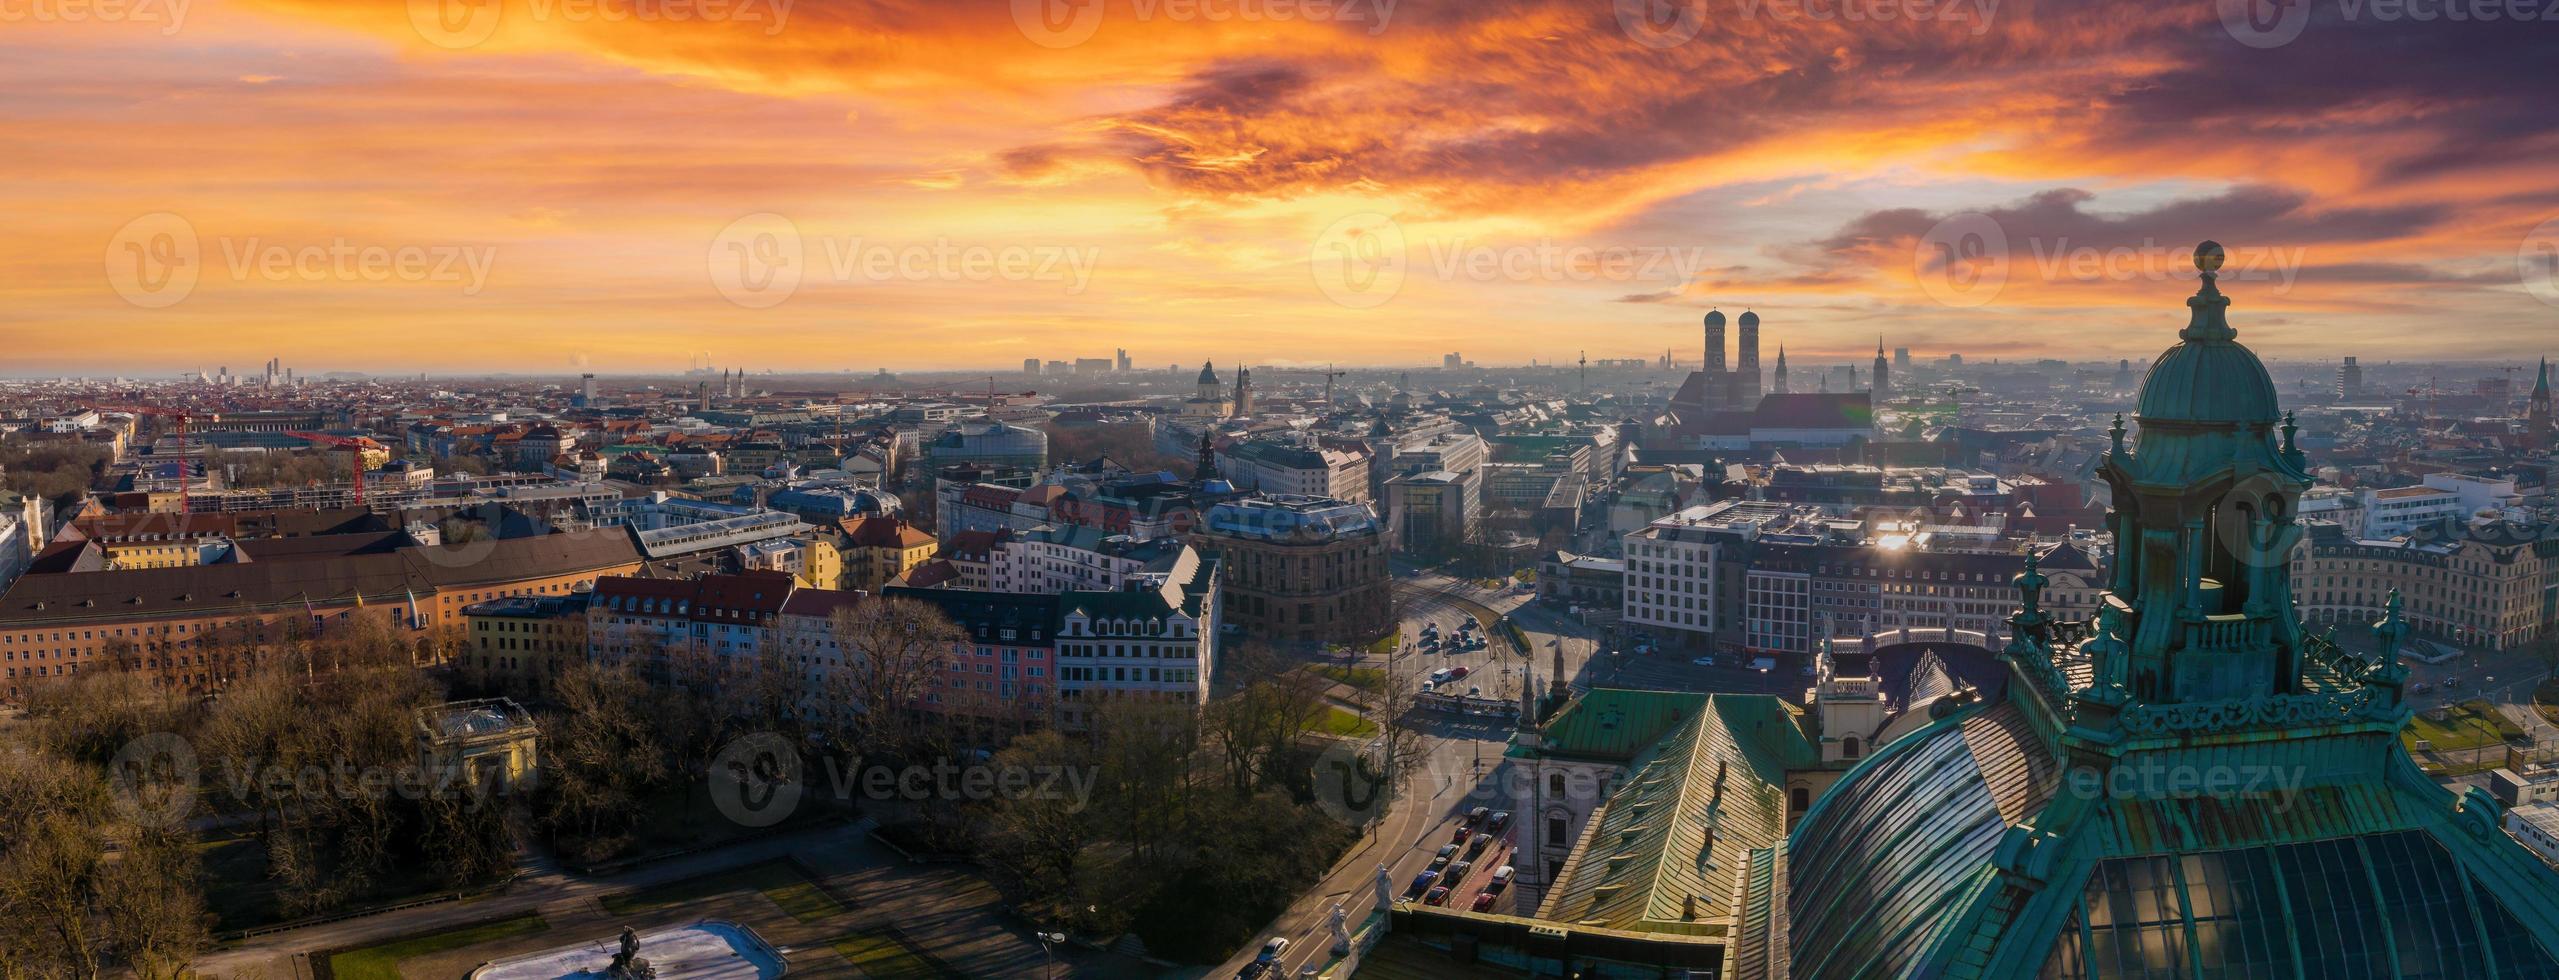 München panoramaarkitektur, bayern, Tyskland. foto